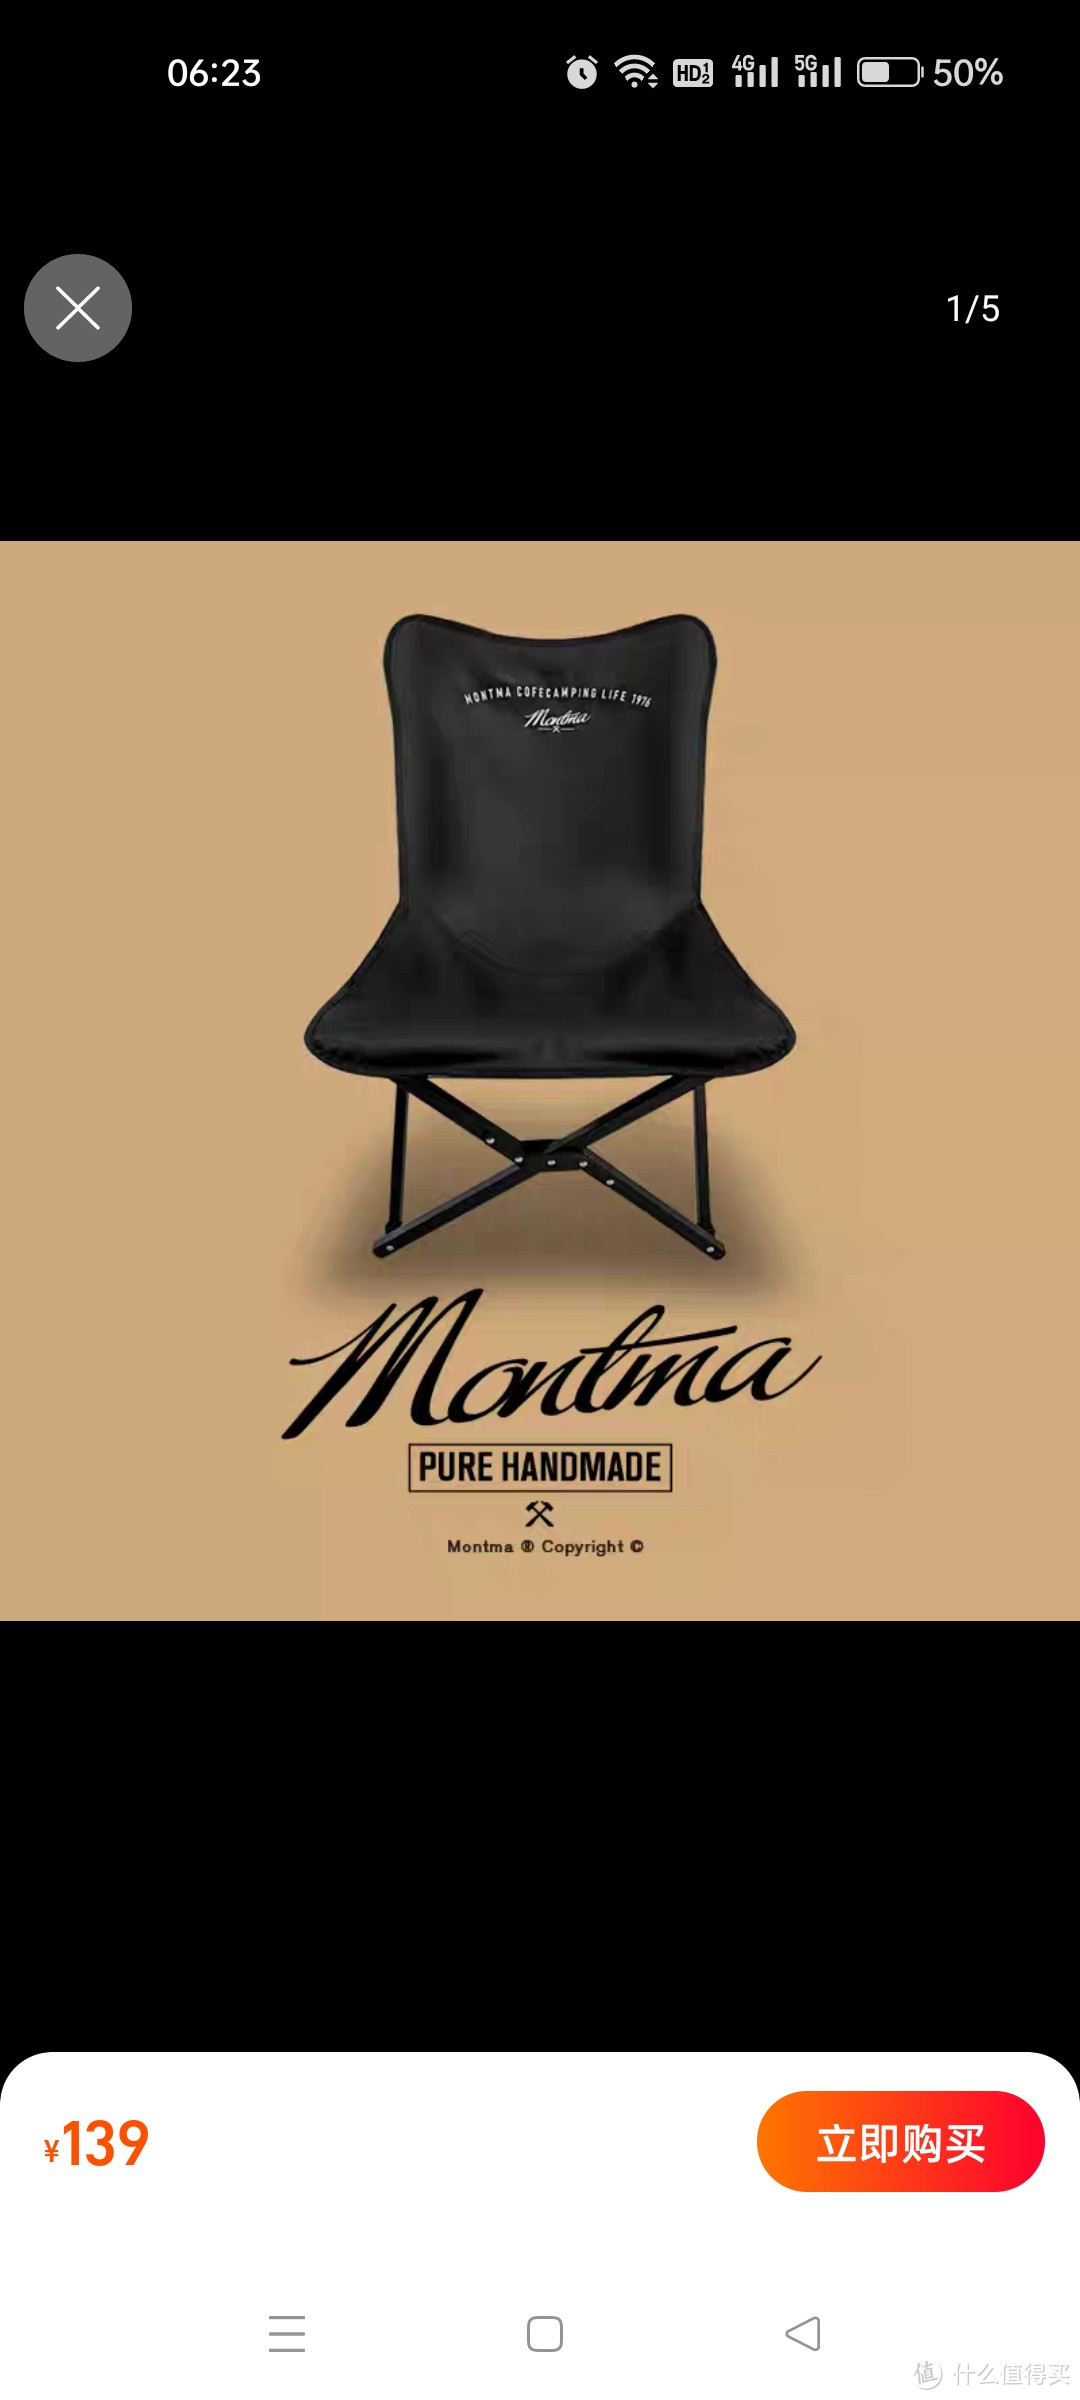 Montma美式印第安黑化高颜露营椅户外折叠椅便携沙滩椅椅子钓鱼凳